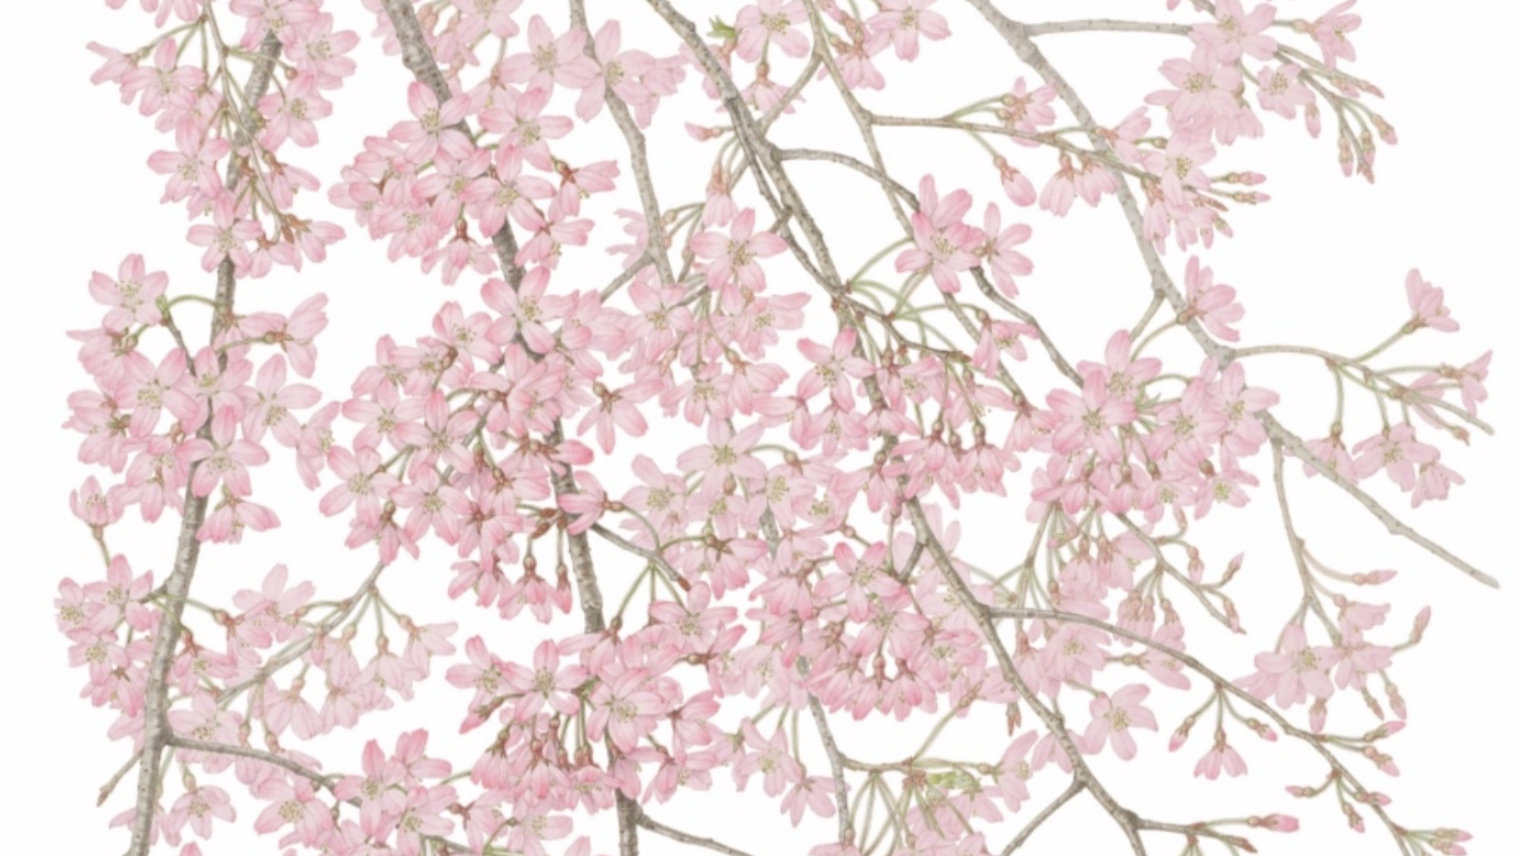 Detail from Meiko Ishikawa's 'Flowering Cherries'